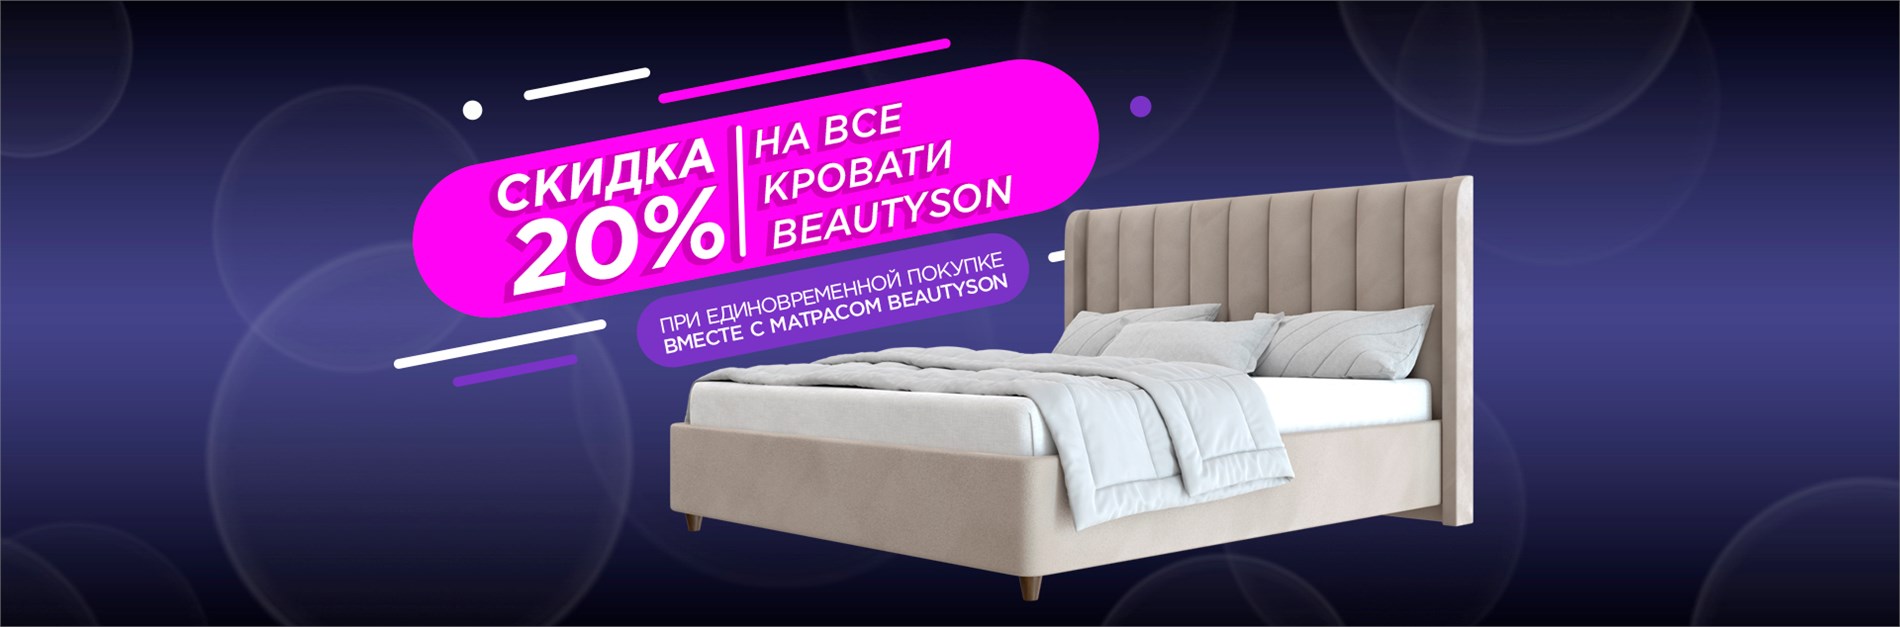 Скидка 20% на все кровати Beautyson